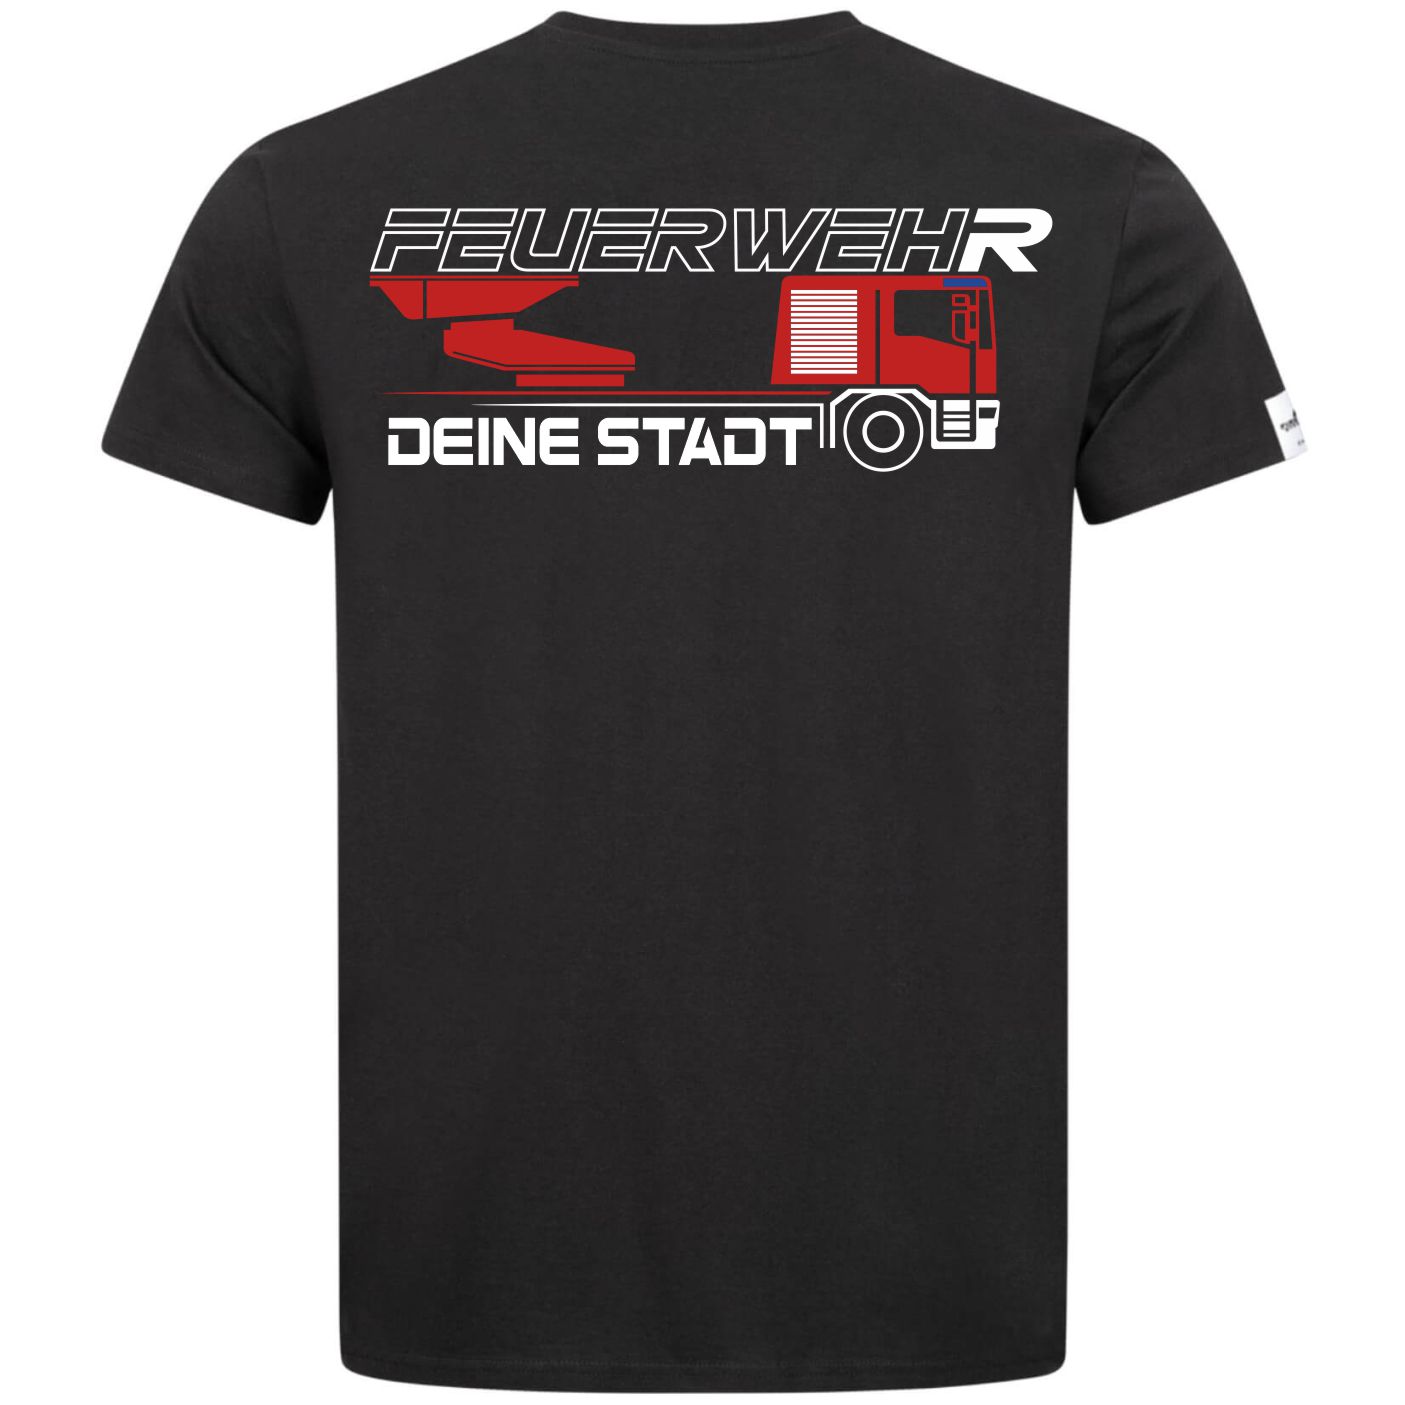 Teamwear Männer T-Shirt - Drehleiter + Deine Stadt